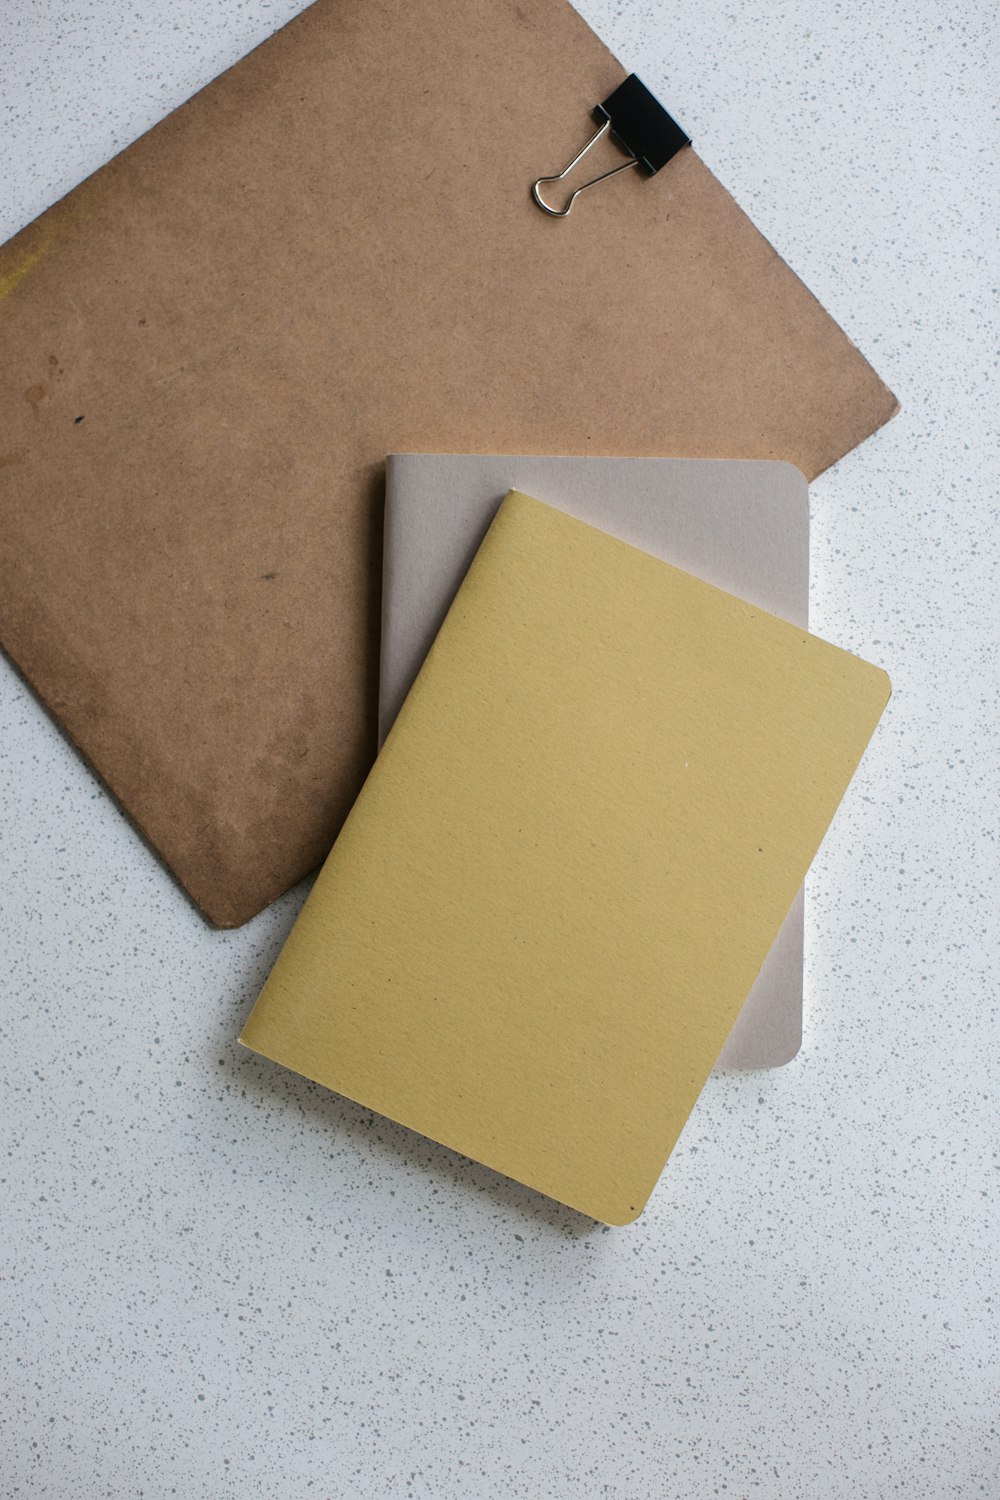 Libro de tapa blanda amarillo y gris cerca del portapapeles marrón